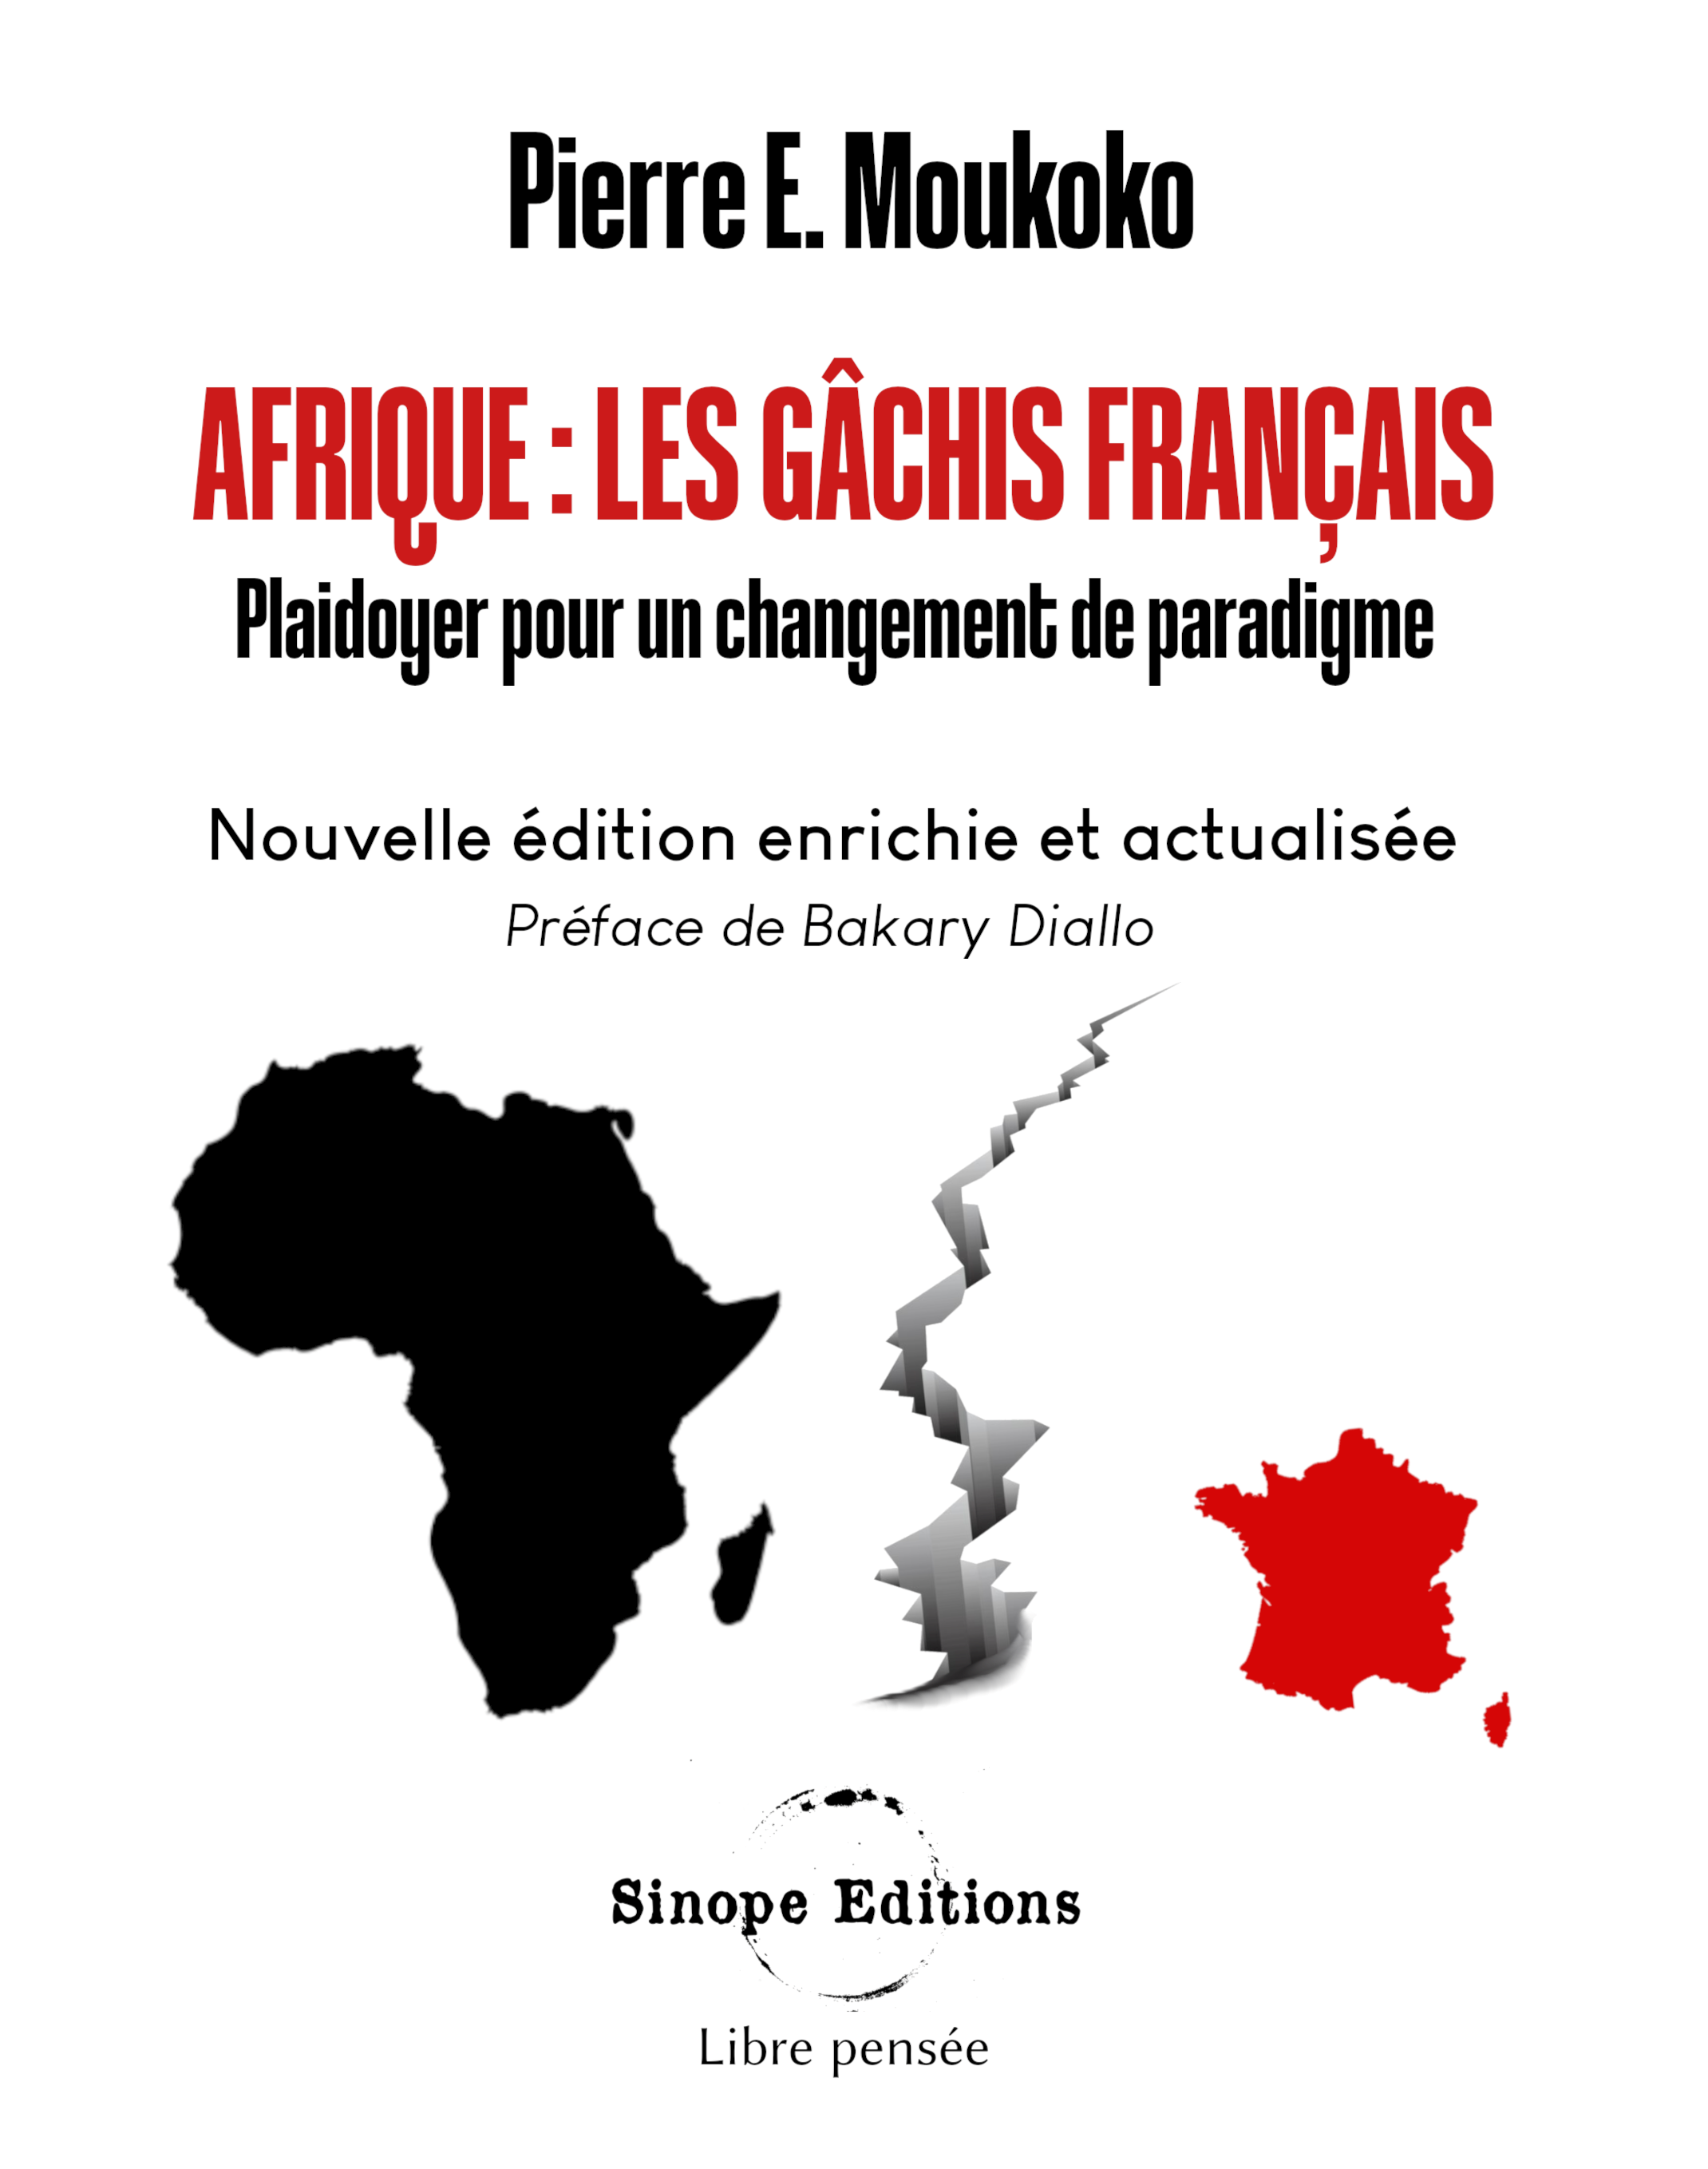 Afrique : Les gâchis français, Pierre E. Moukoko